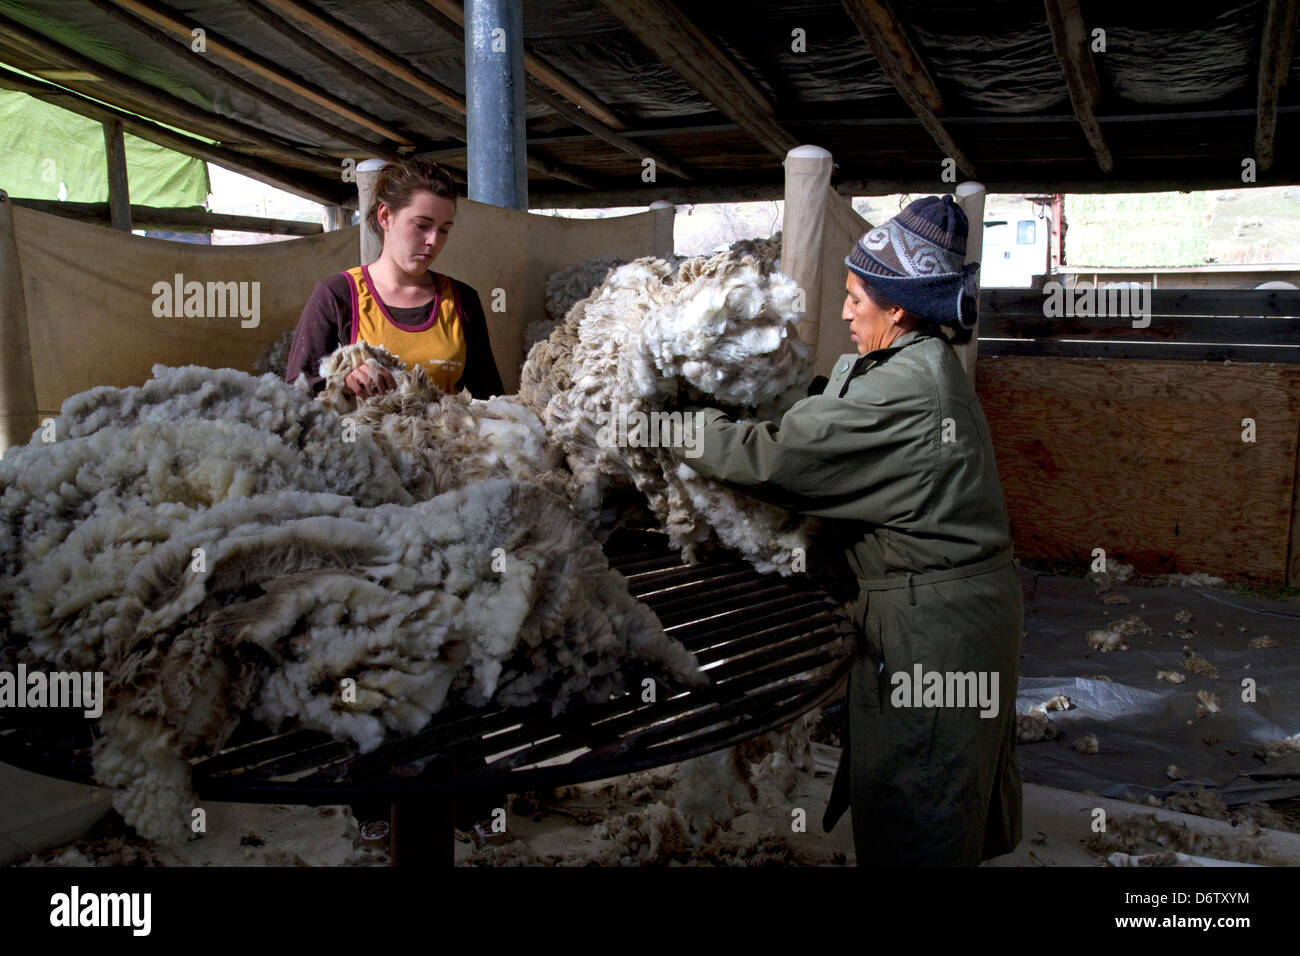 Sheep being sheared in a shearing shed near Emmett, Idaho, USA. Stock Photo